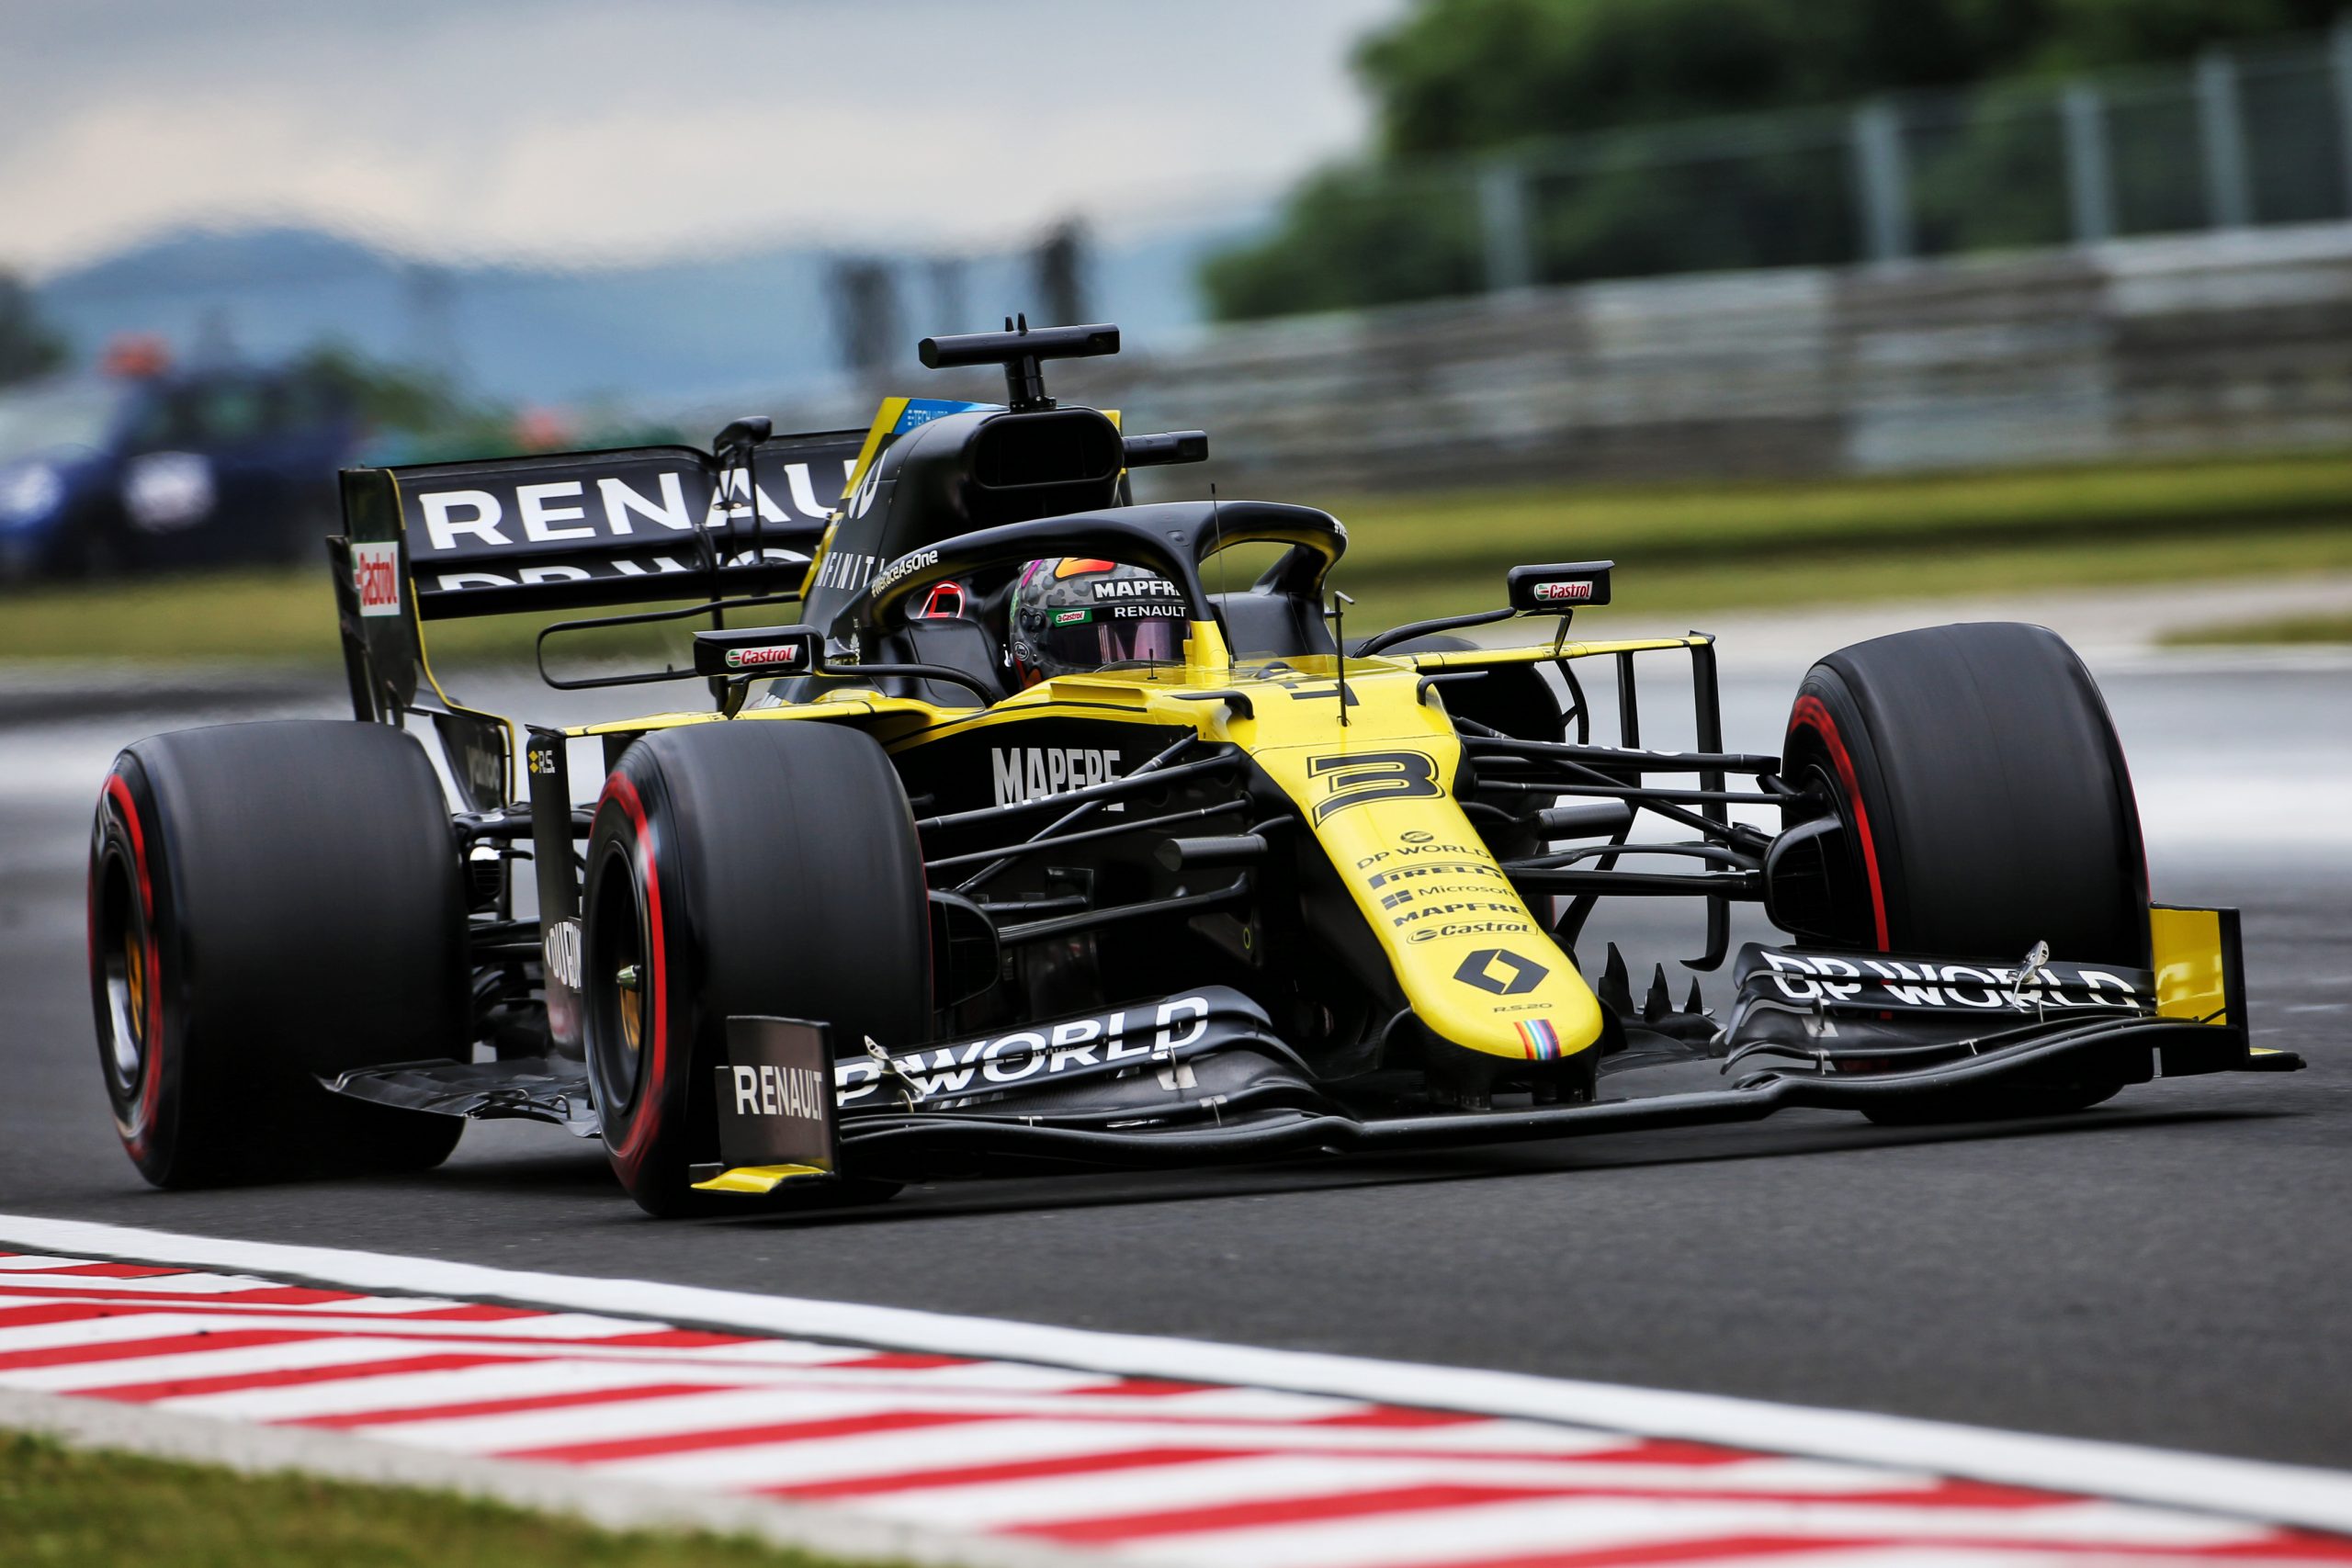 Renault F1 confirme plusieurs évolutions techniques sur la RS20 à